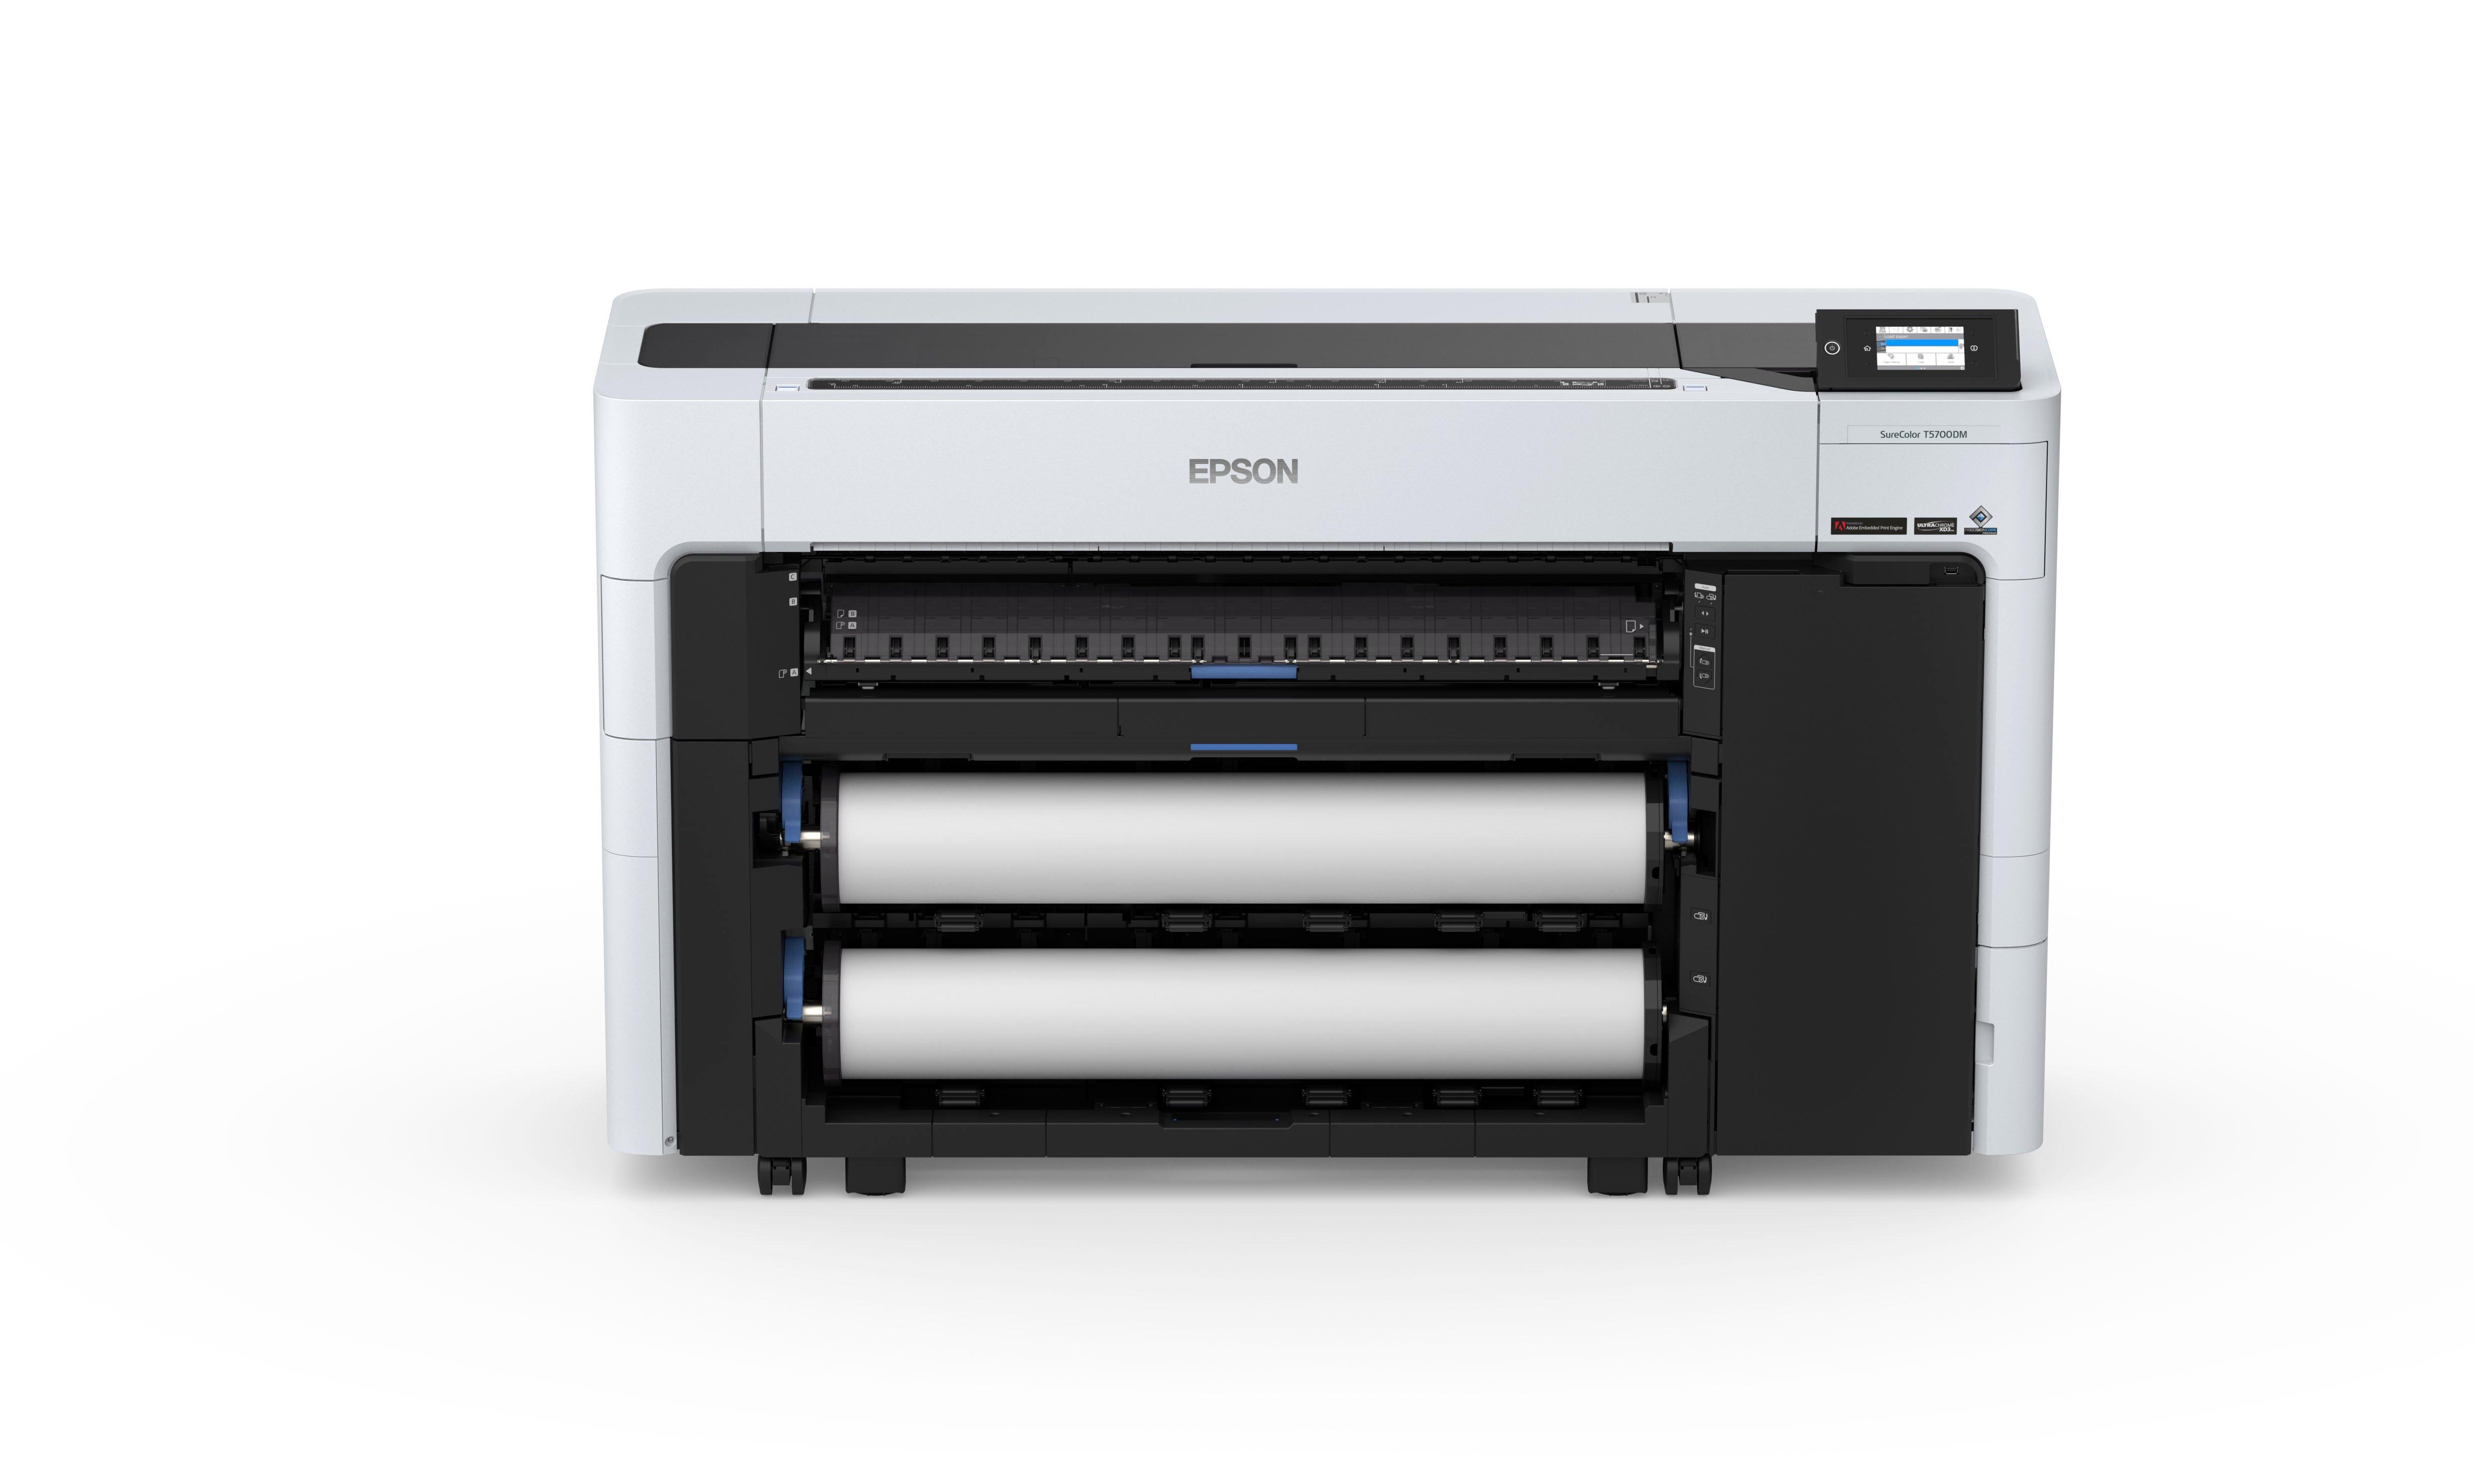 Quel est le rôle d'une imprimante multifonction ?